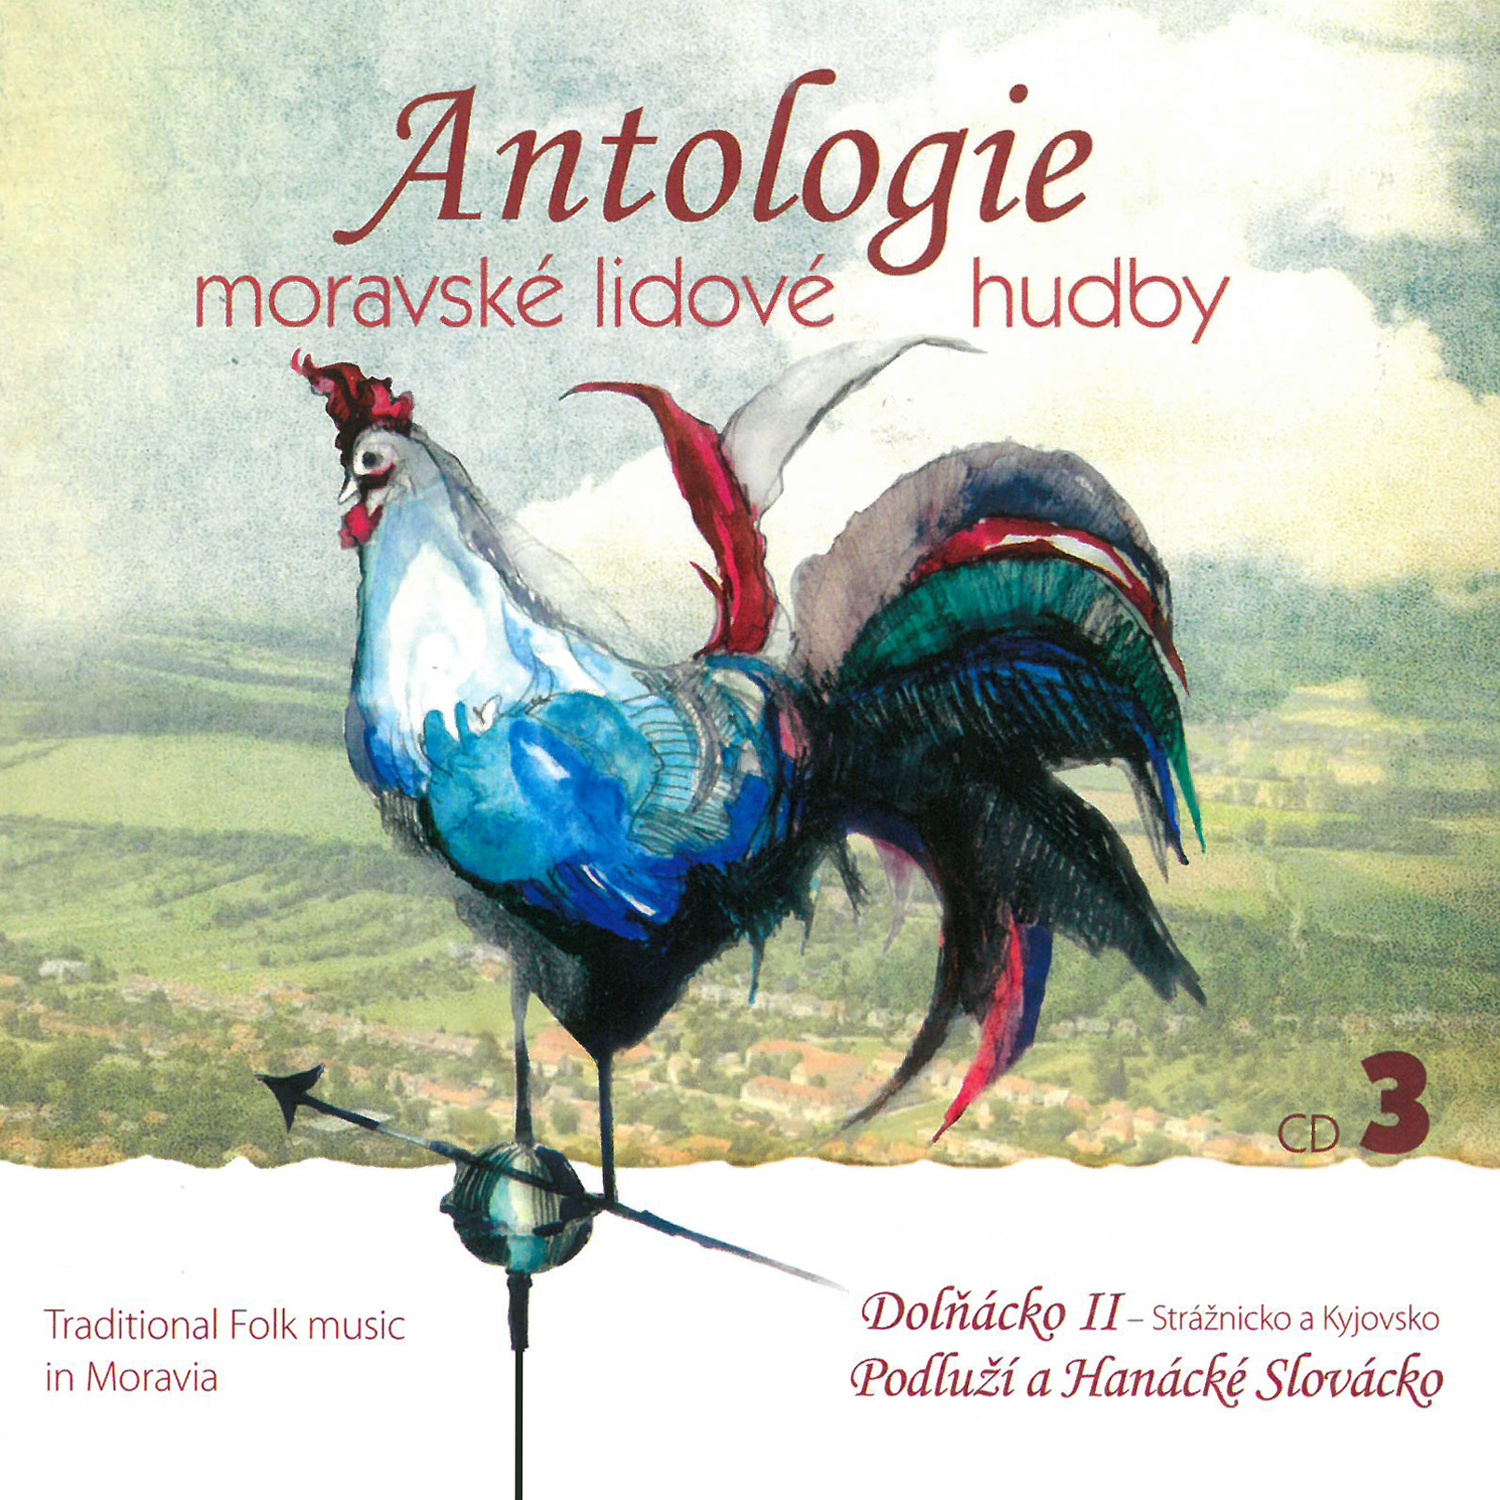 CD Shop - ANTOLOGIE MORAVSKE LIDOVE HUDBY CD3 